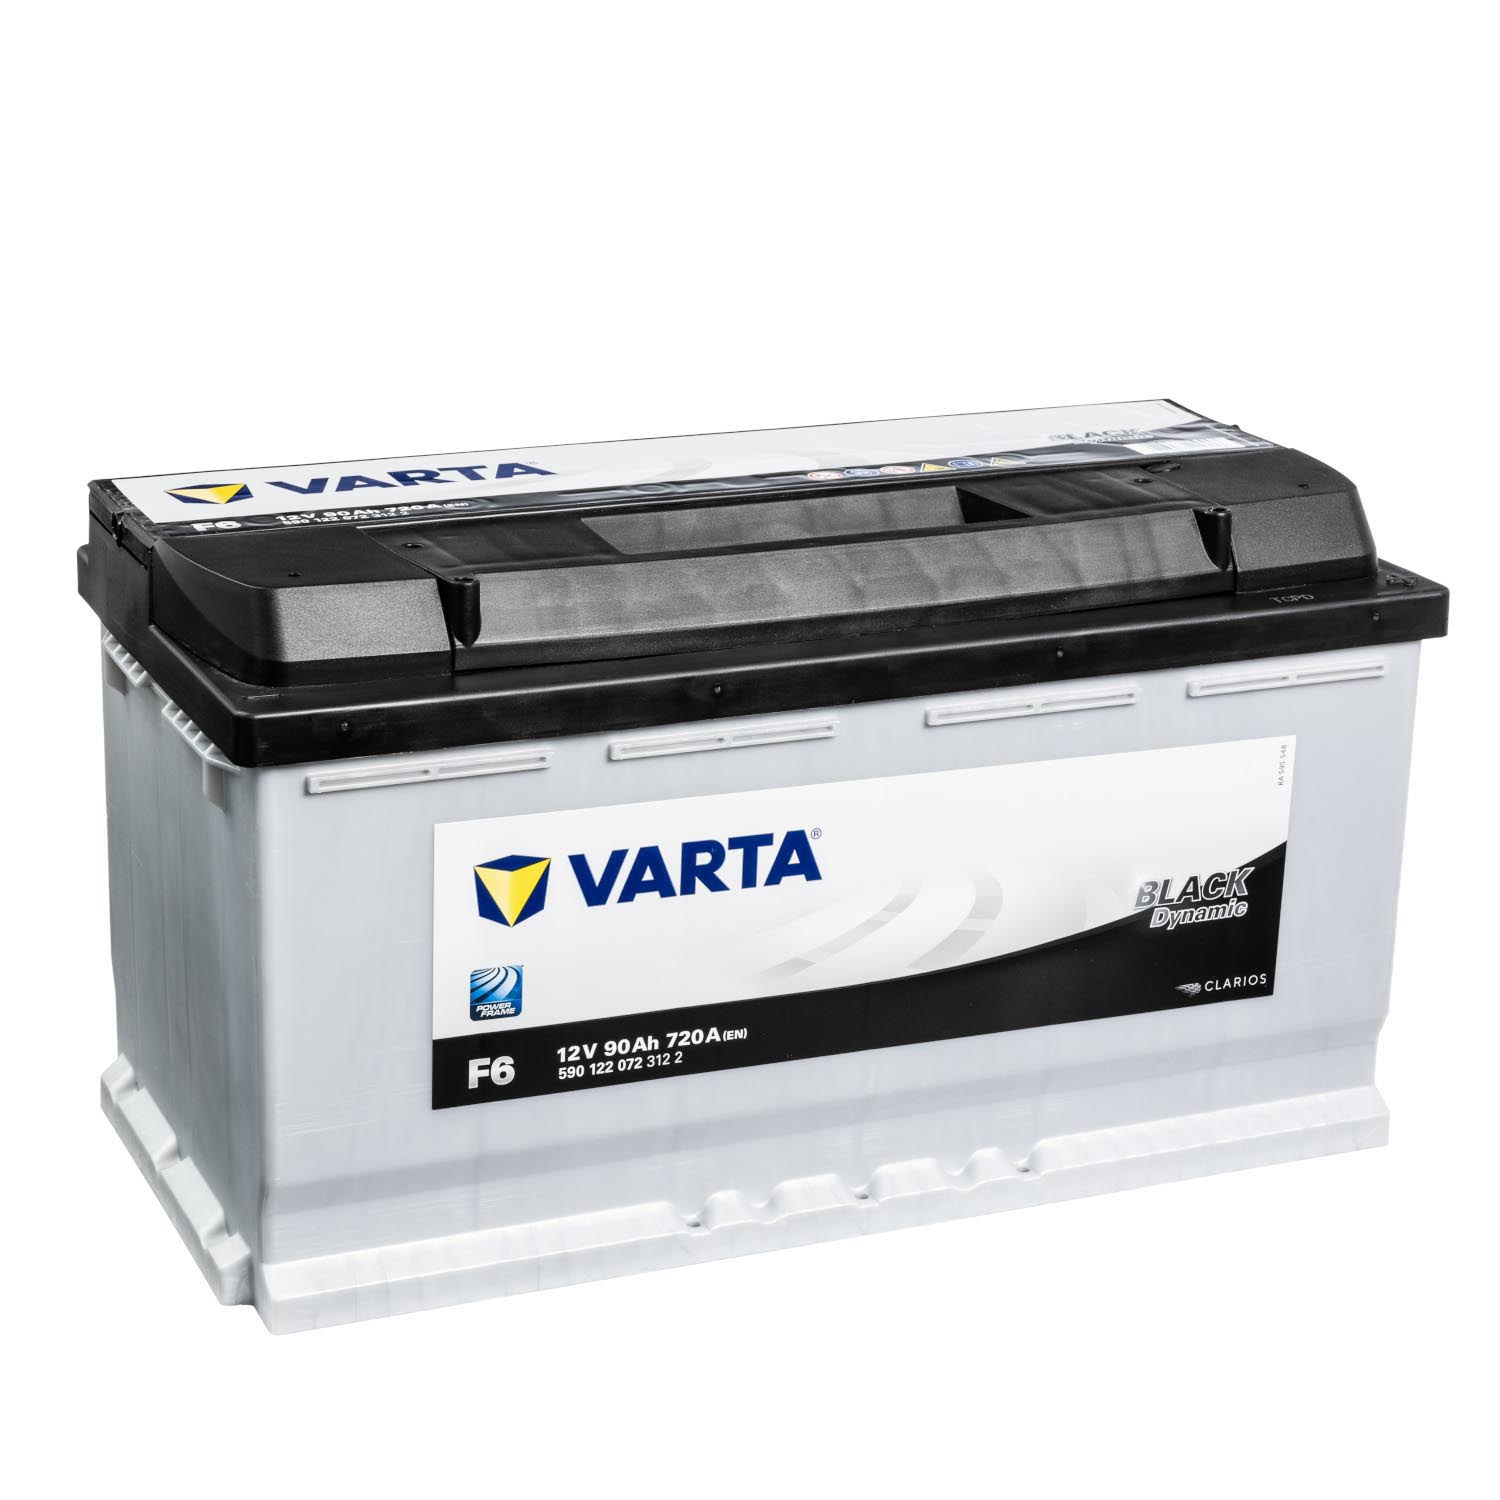 https://batterie24.de/media/image/f8/3c/af/varta-black-dynamic-f6-autobatterie-12v-90ah-3061-16750.jpg